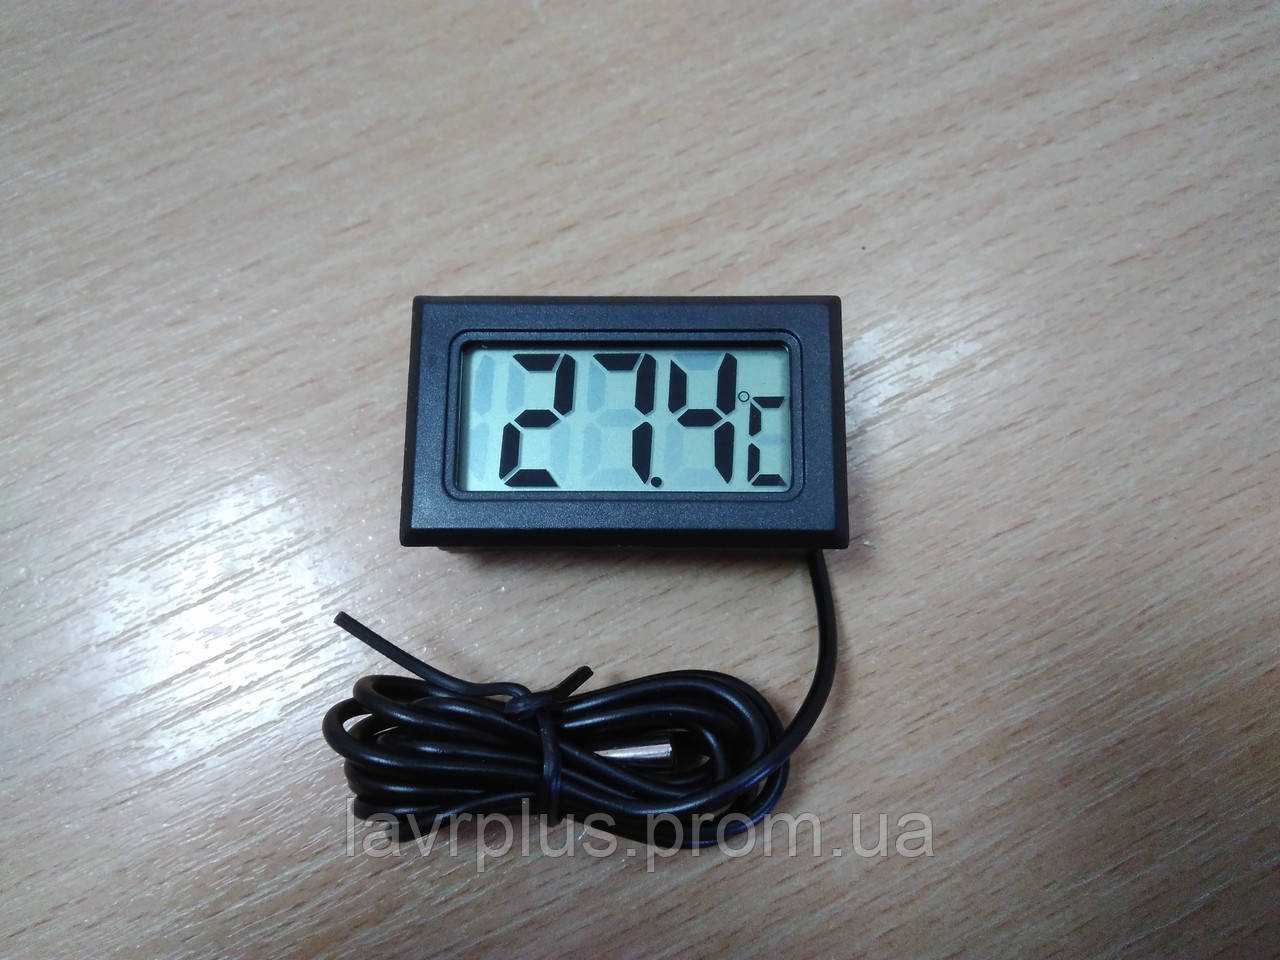 Термометр цифровий ТРМ-10 (-50...+70) КИТАЙ